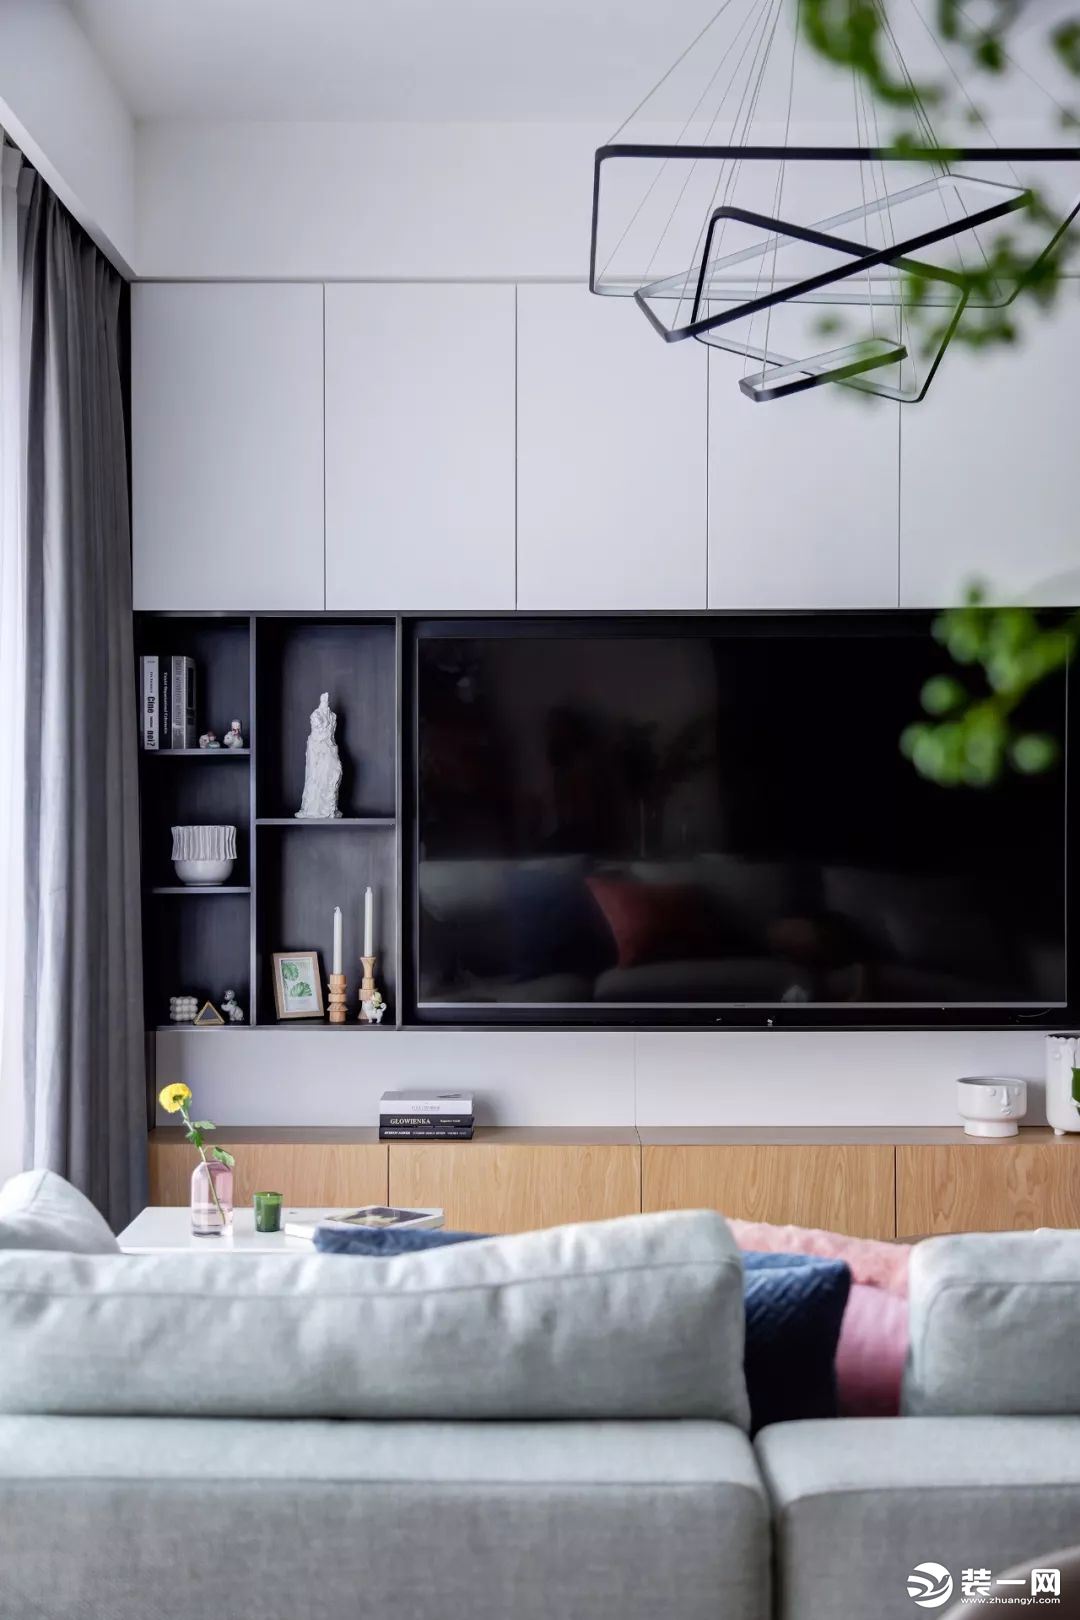 电视墙以定制柜作为主体，左侧加入了几个黑色的开放格架，摆上雅致的装饰品，让空间显得现代优雅而大气。